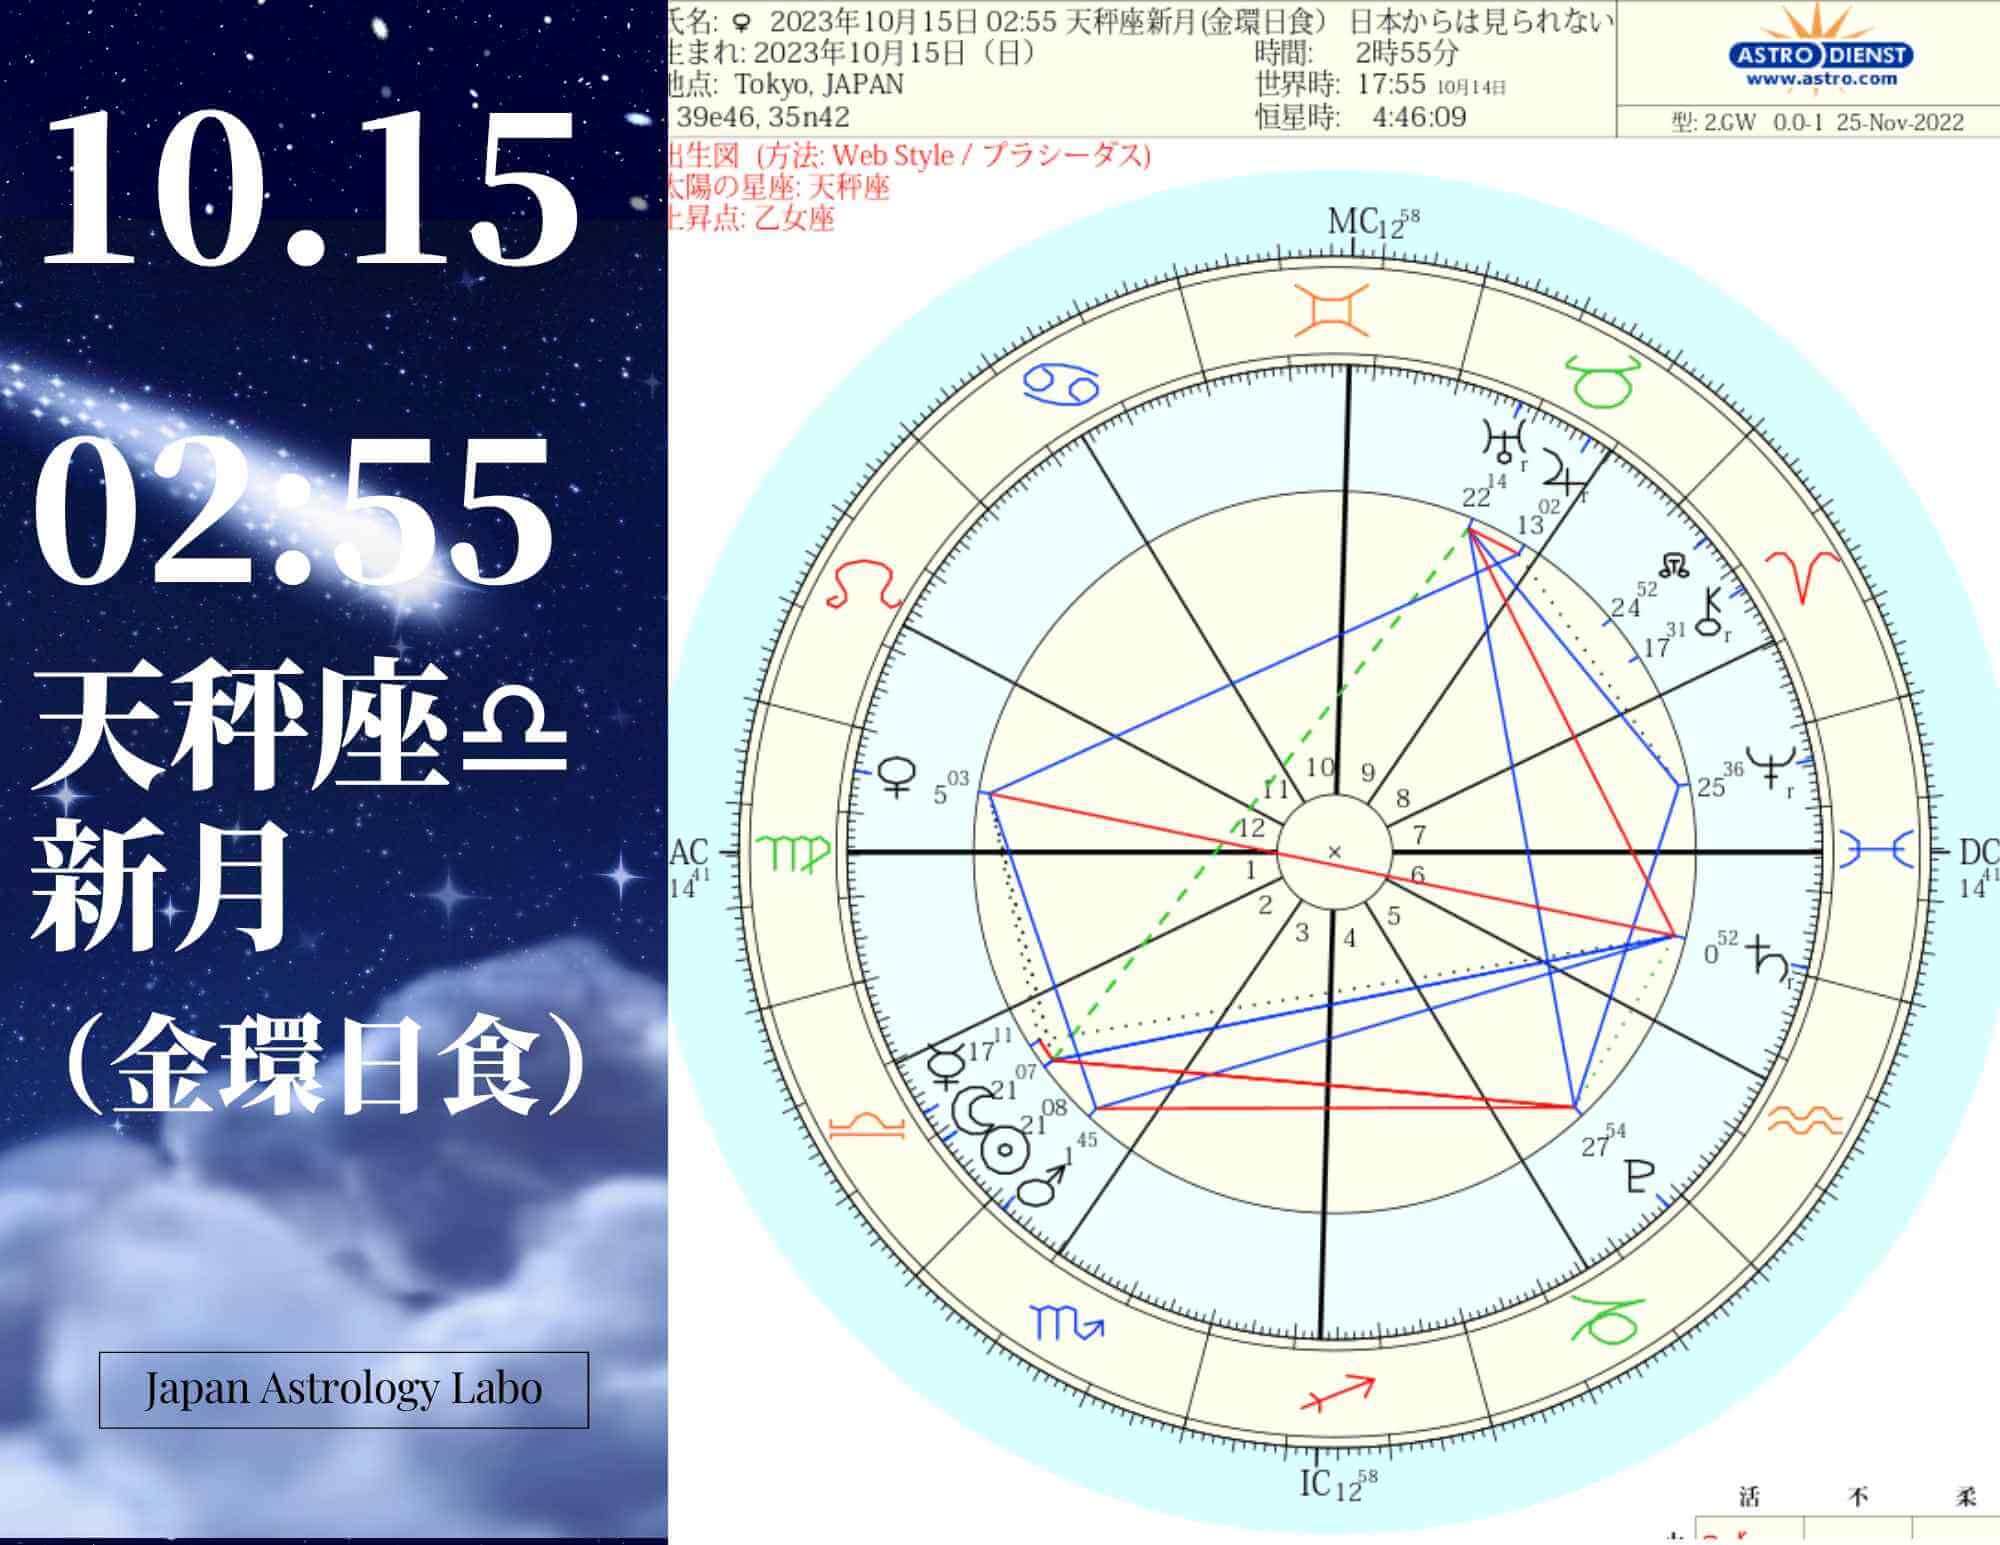 2023年10月15日 0255 天秤座新月(金環日食）※日本からは見られない